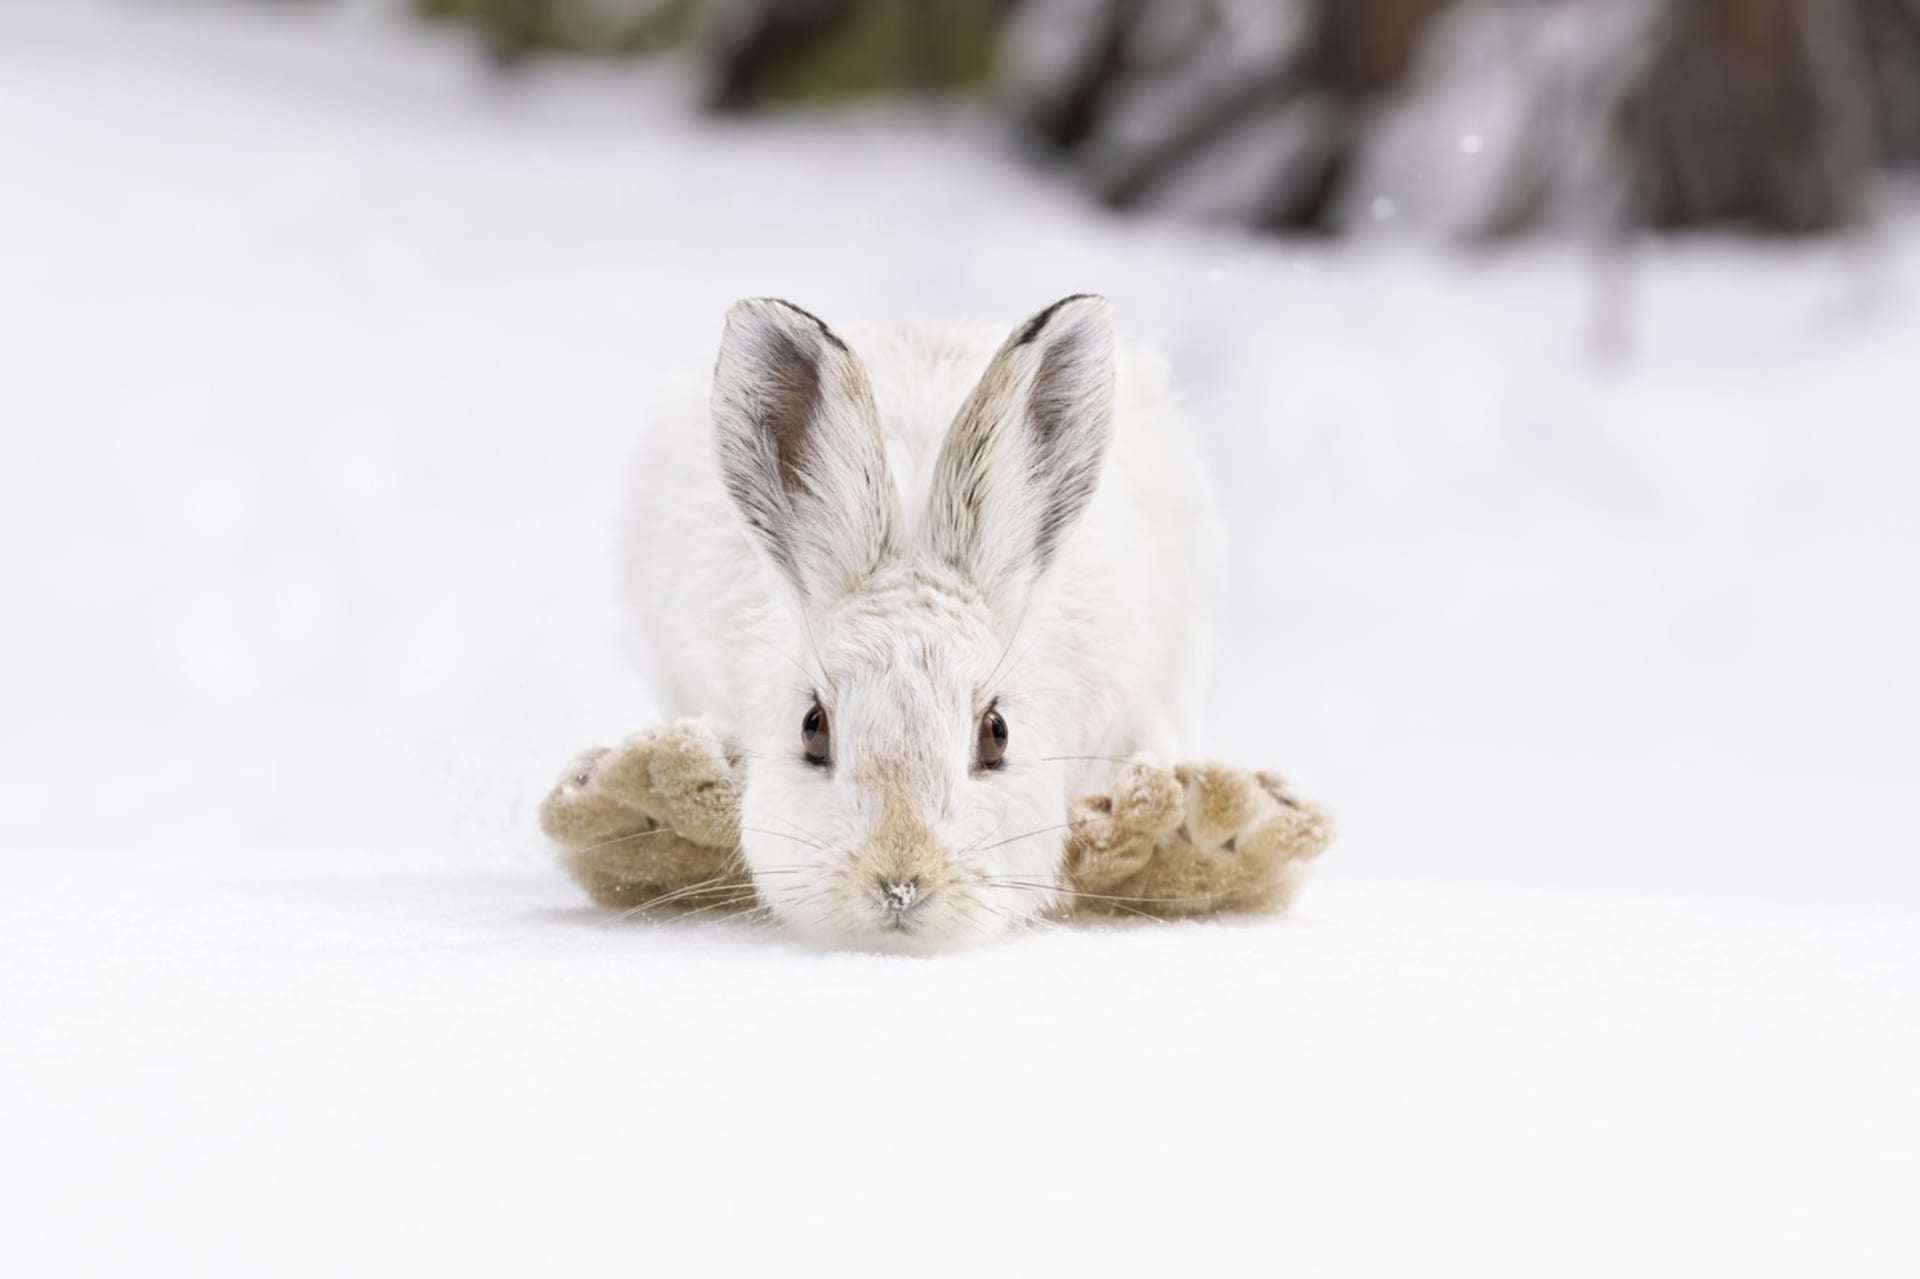 Sněhové botky, Deena Sveinsson